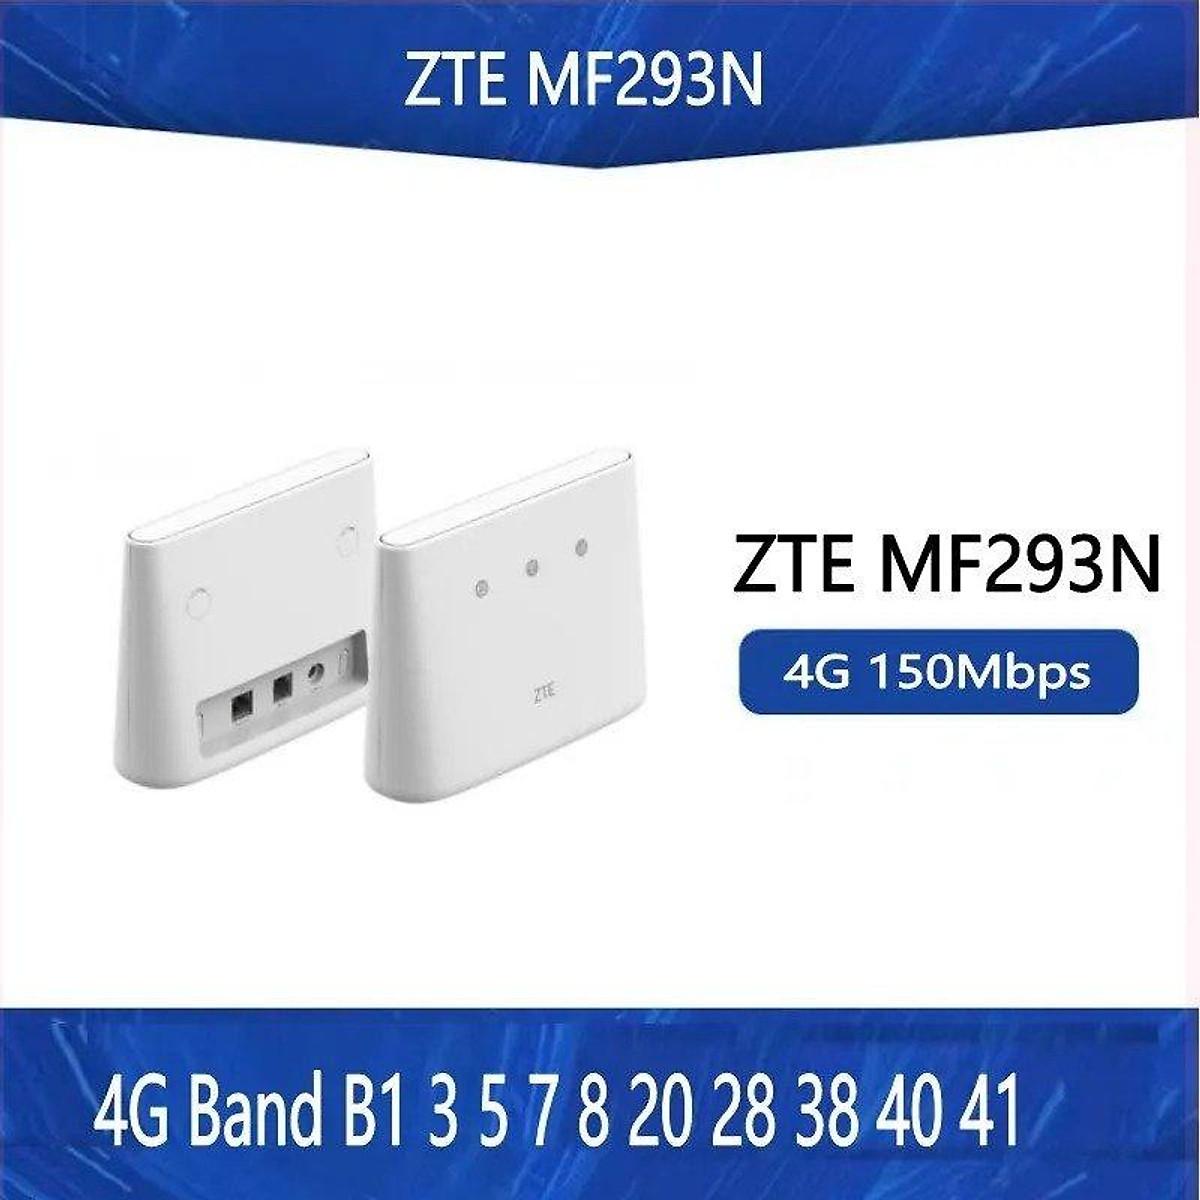 Bộ Phát Sóng Wifi Sử Dụng SIM 4G ZTE MF293N, Hàng Cao Cấp Hổ Trợ Kết Nối Tốc Độ Cao Tới 32 Thiết Bị Cùng Lúc, Dễ Cài Đặt